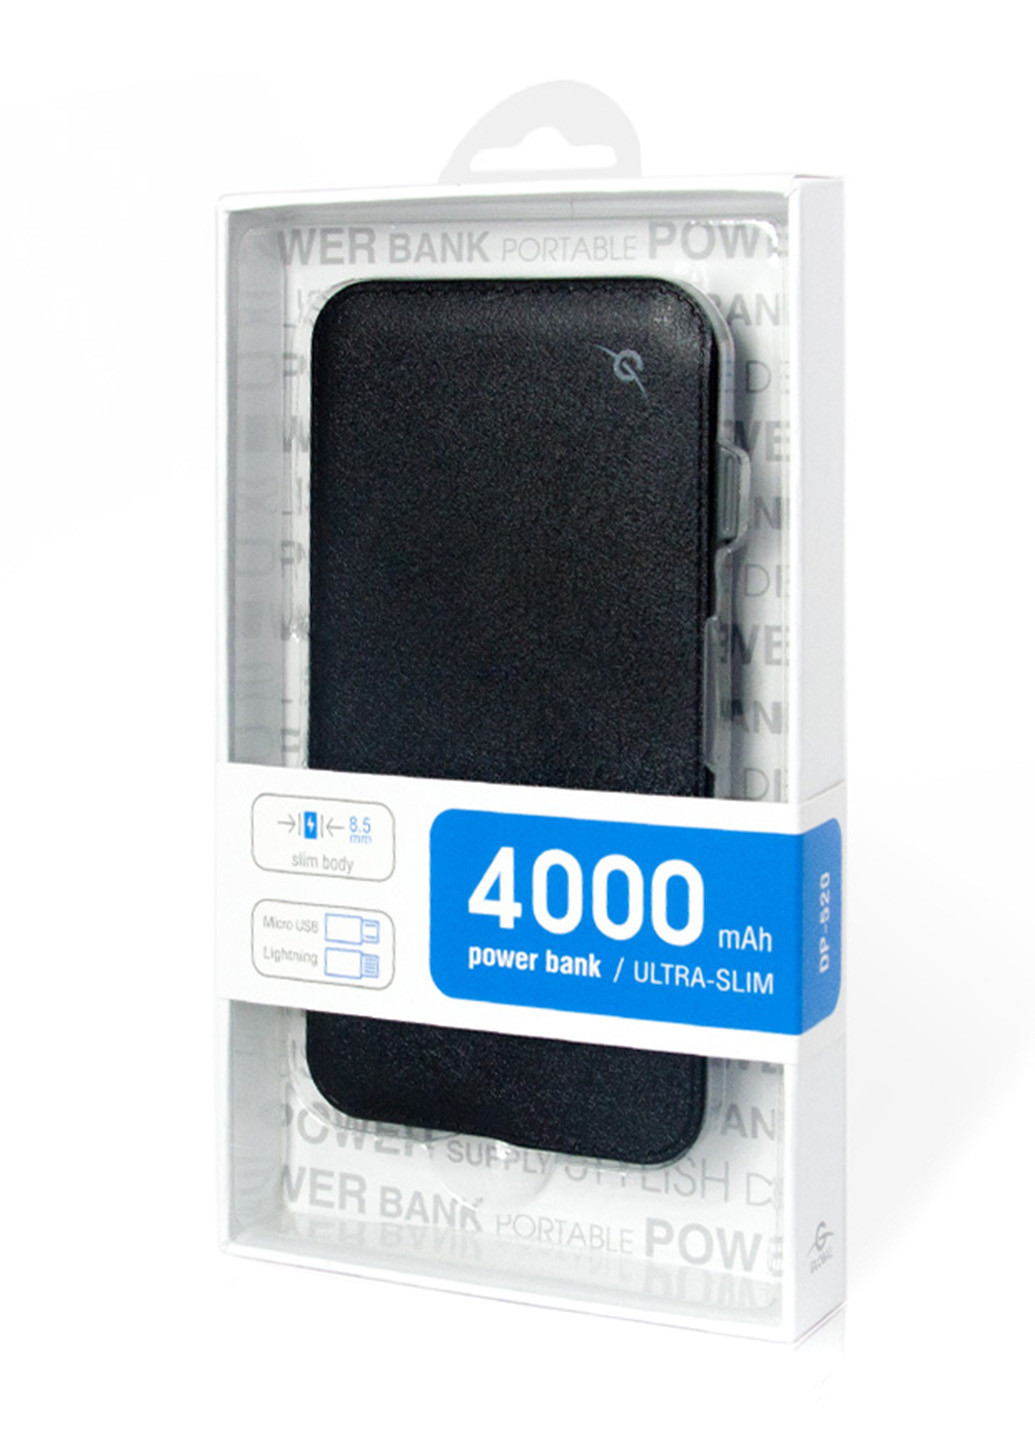 Внешний аккумулятор G.Power Bank 4000mAh (черный) (павербанк) Global DP520